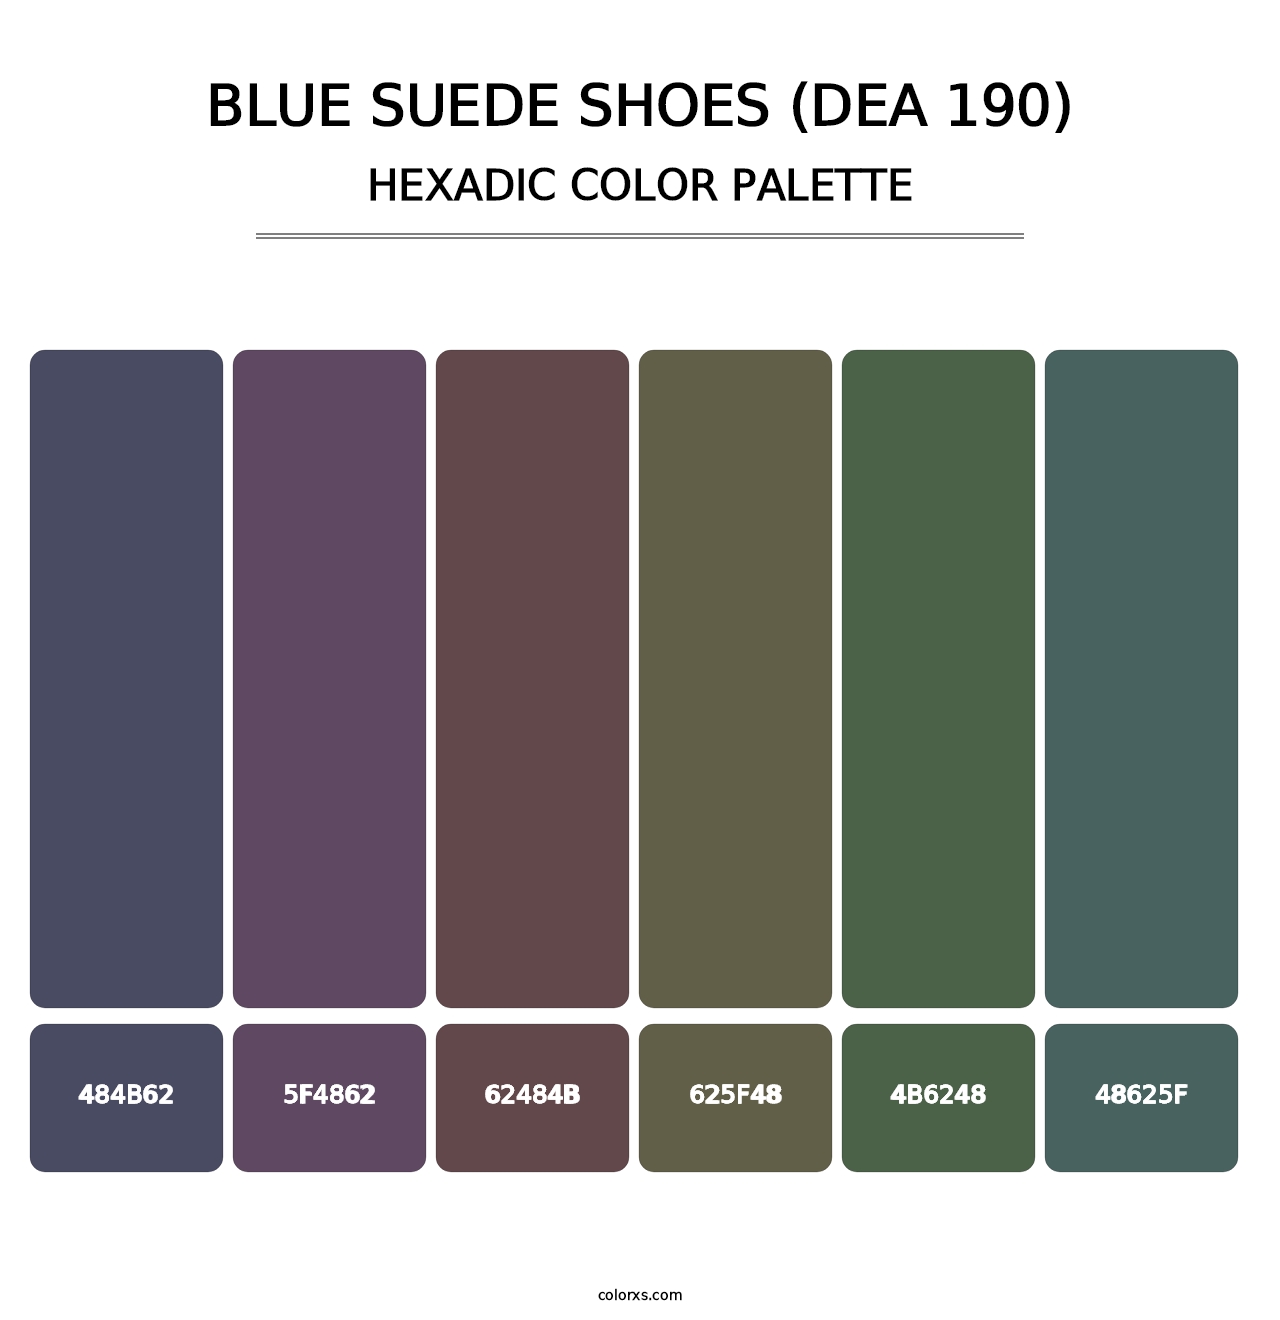 Blue Suede Shoes (DEA 190) - Hexadic Color Palette